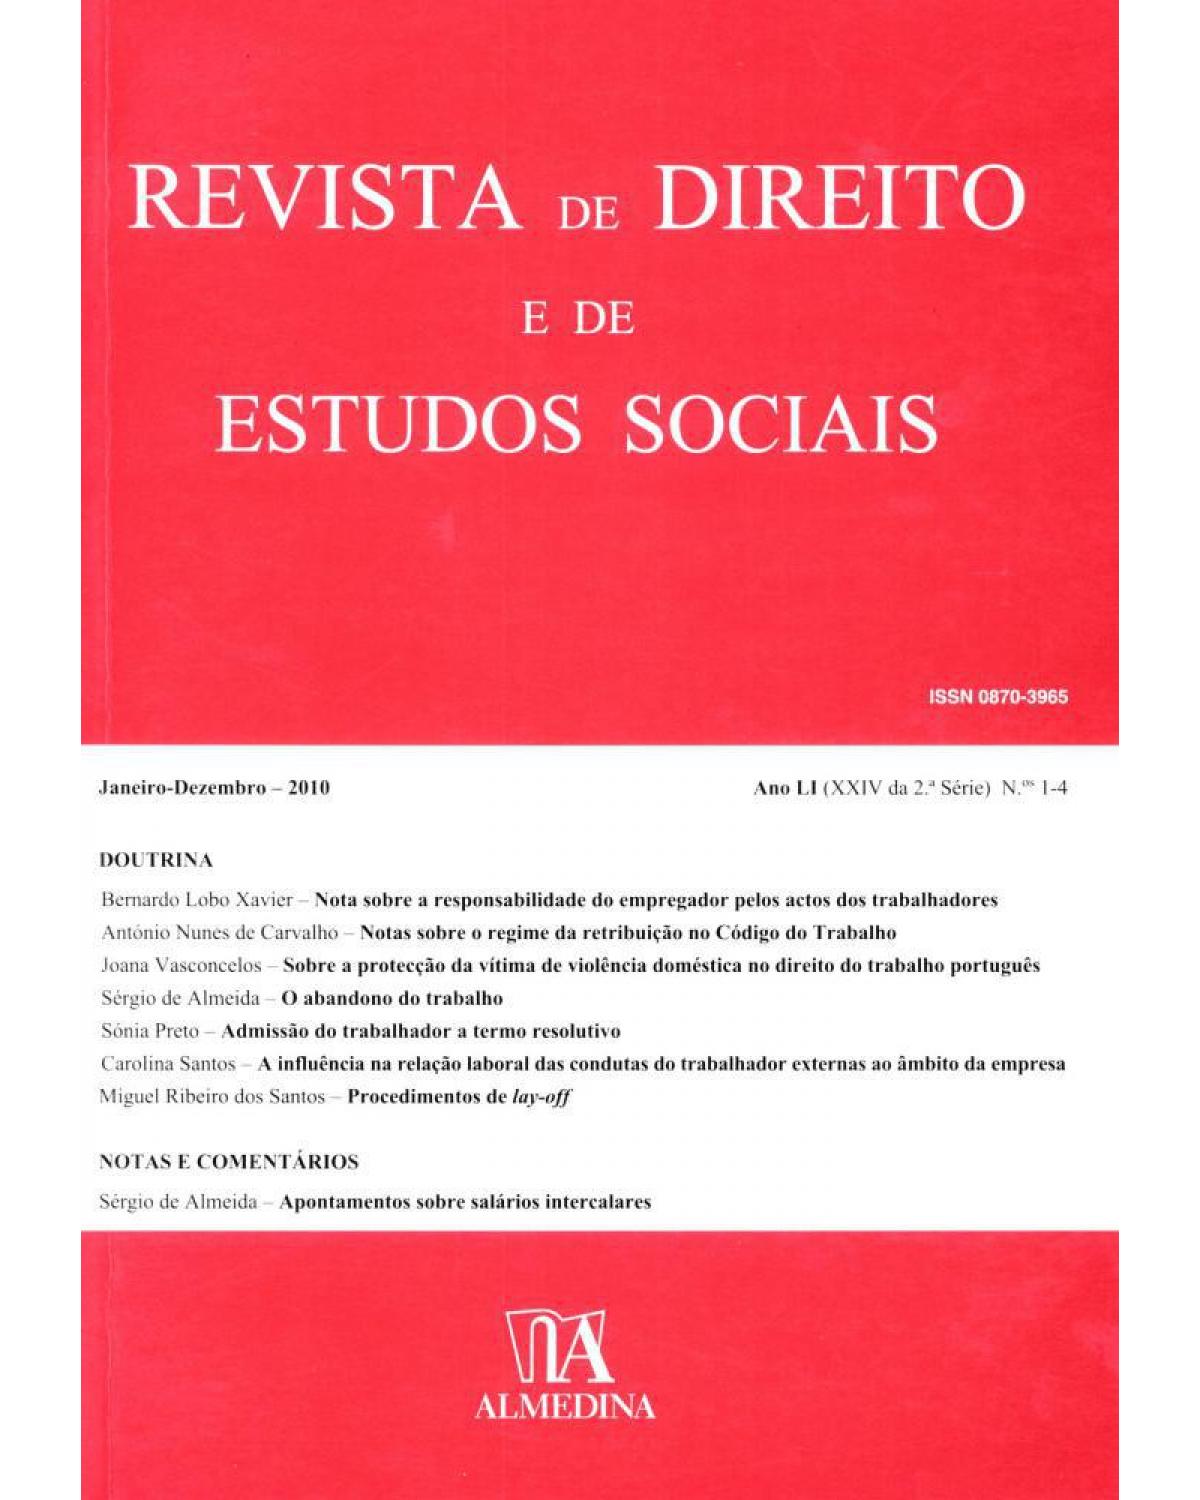 Revista de direito e de estudos sociais - ano LI (XXIX da 2ª série) - N.ºs 1-4 - 1ª Edição | 2011